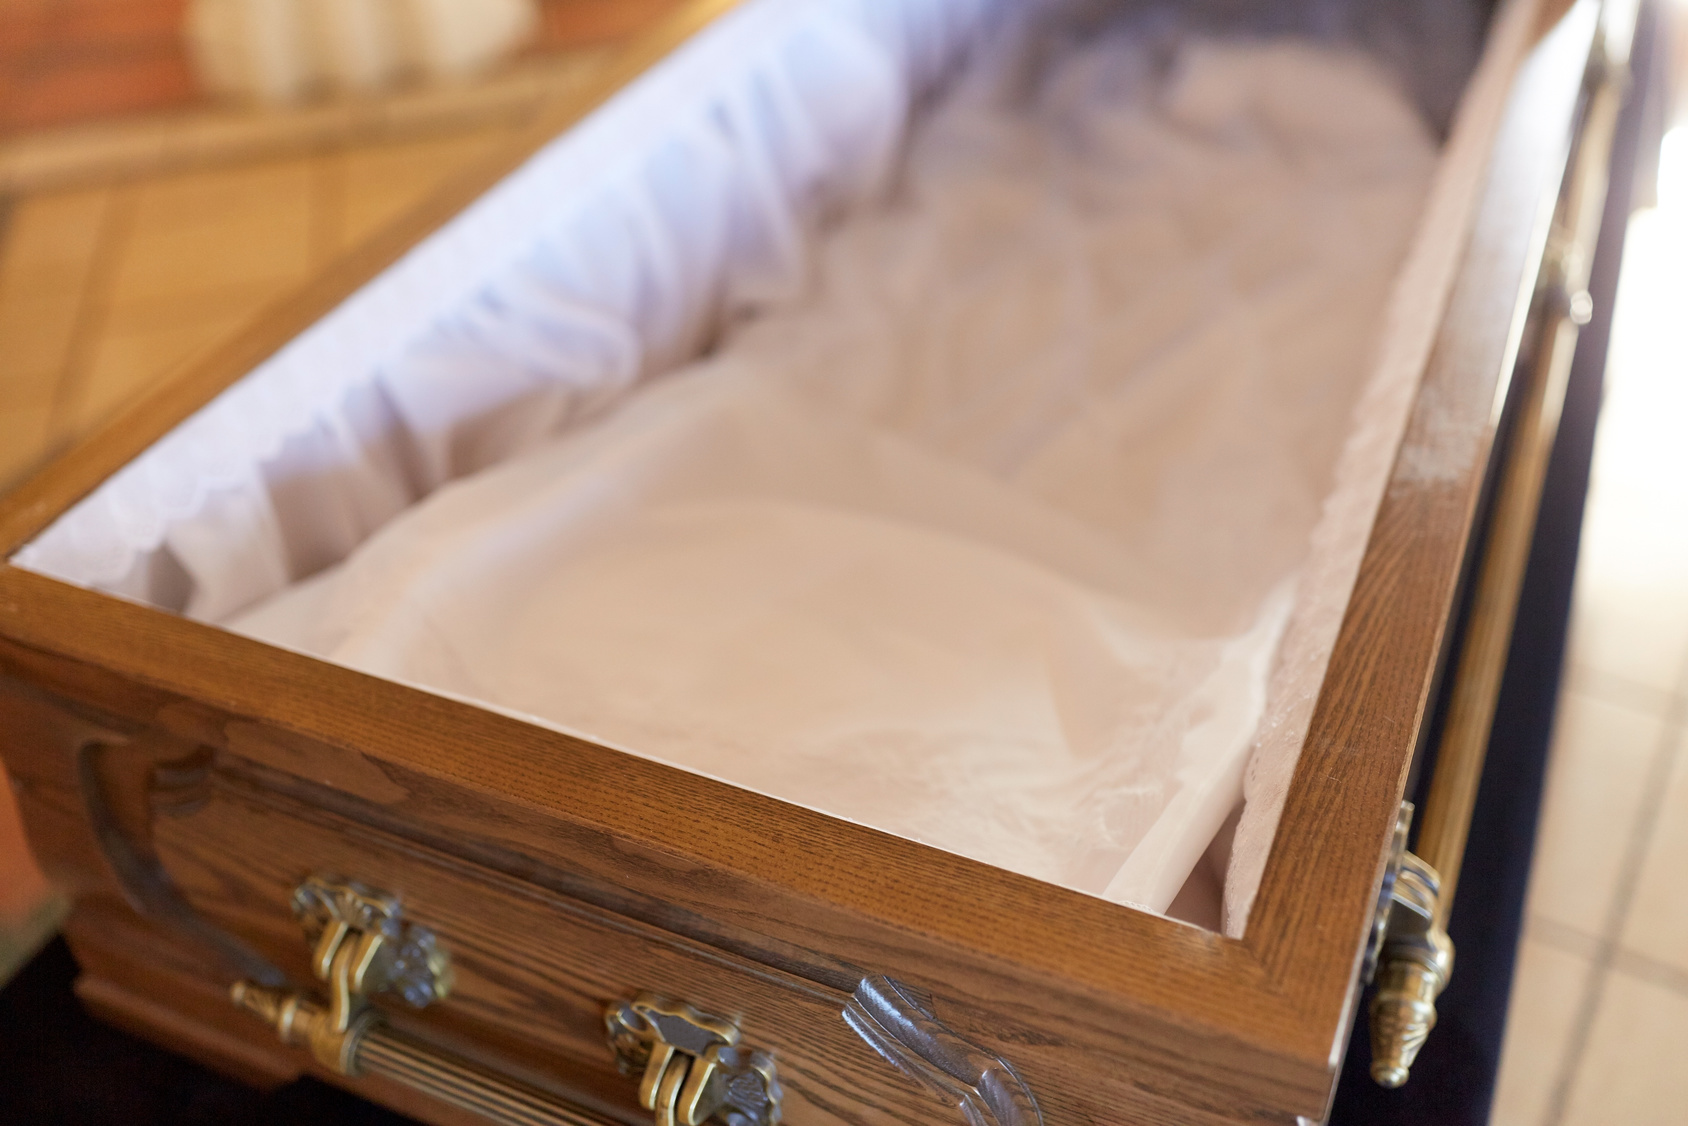 Nach fast 30 Jahren: Polizei will Leiche vom Vierjährigem exhumieren